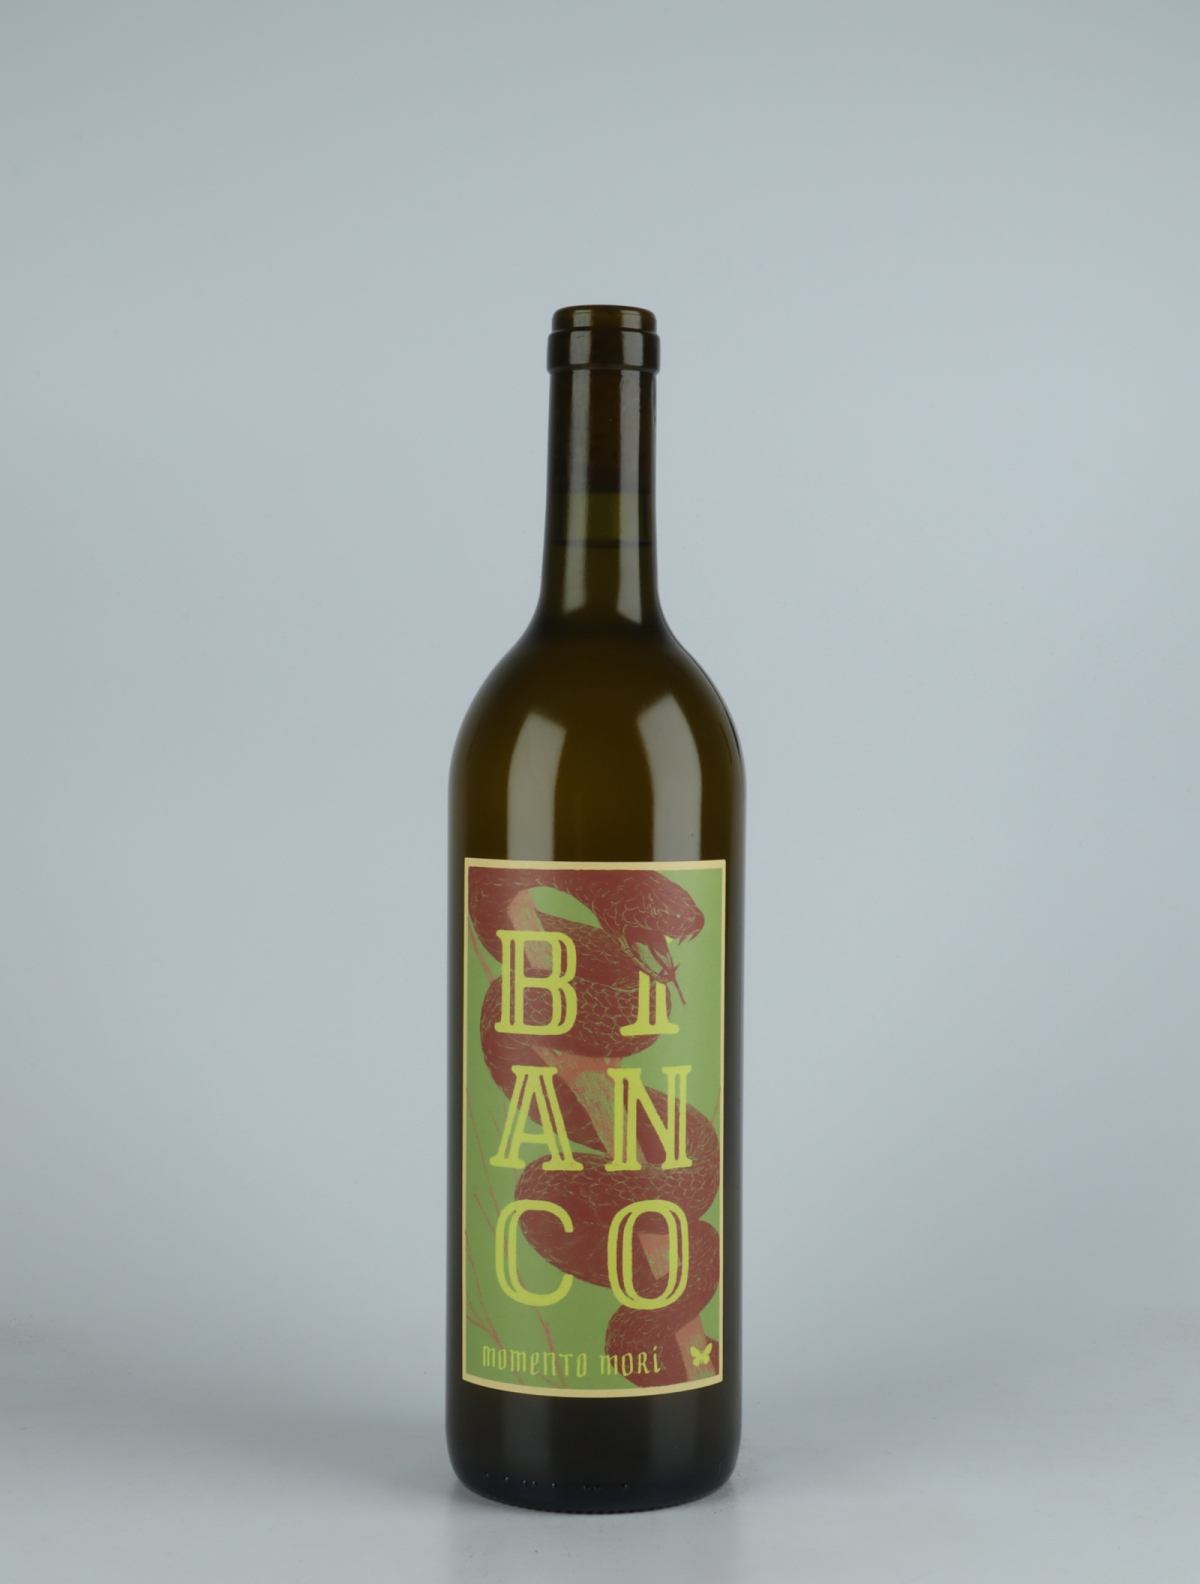 A bottle 2021 Bianco Orange wine from Momento Mori, Victoria in 